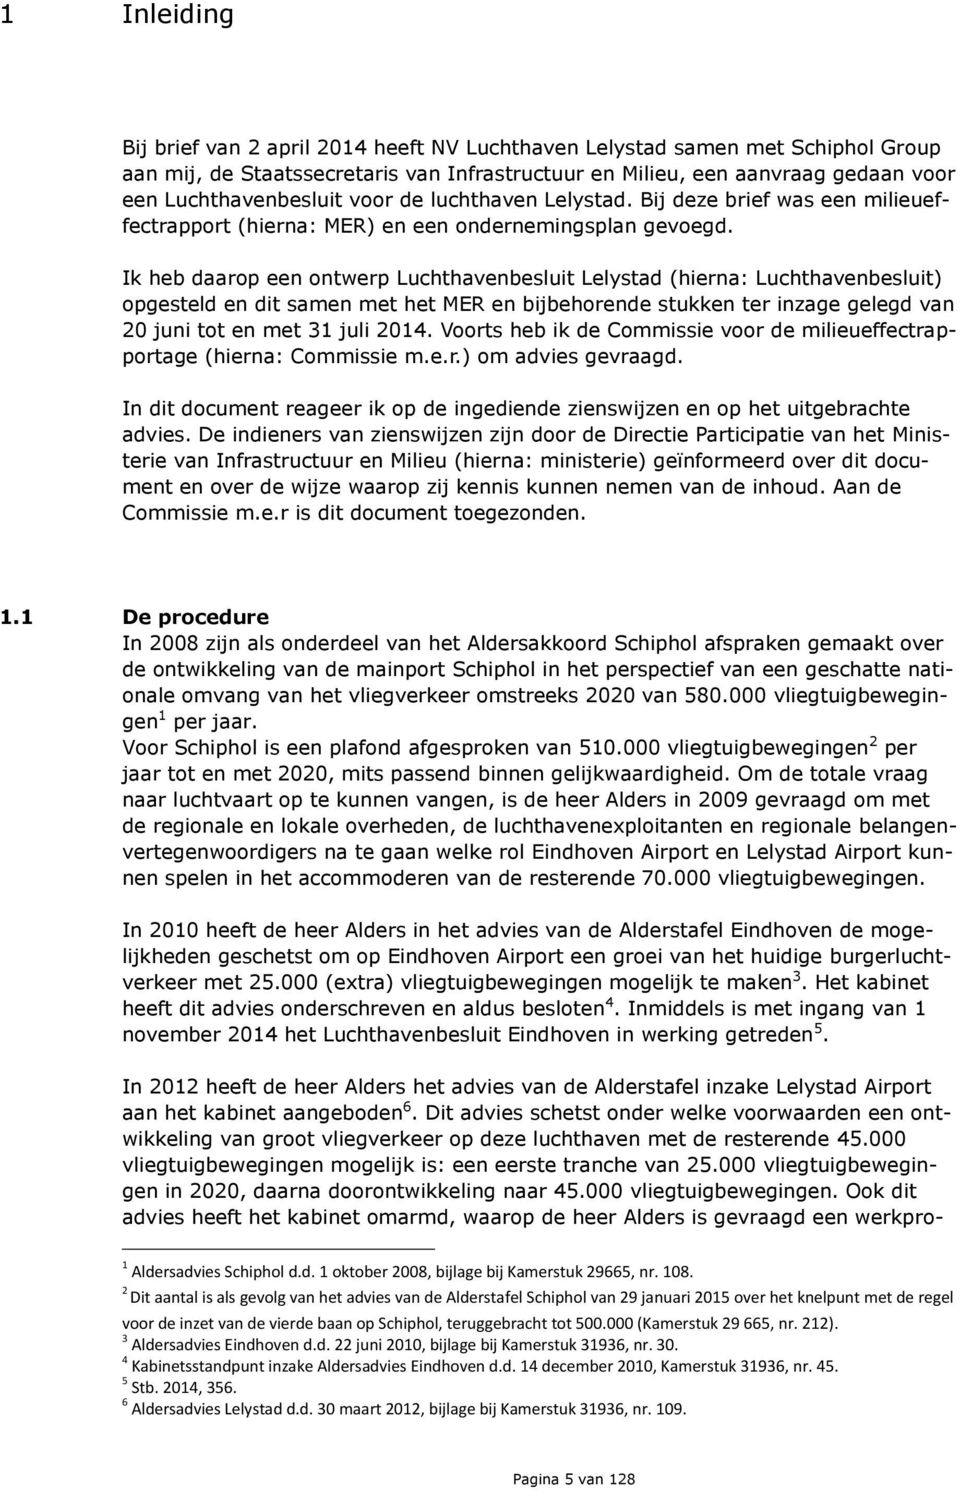 Ik heb daarop een ontwerp Luchthavenbesluit Lelystad (hierna: Luchthavenbesluit) opgesteld en dit samen met het MER en bijbehorende stukken ter inzage gelegd van 20 juni tot en met 31 juli 2014.